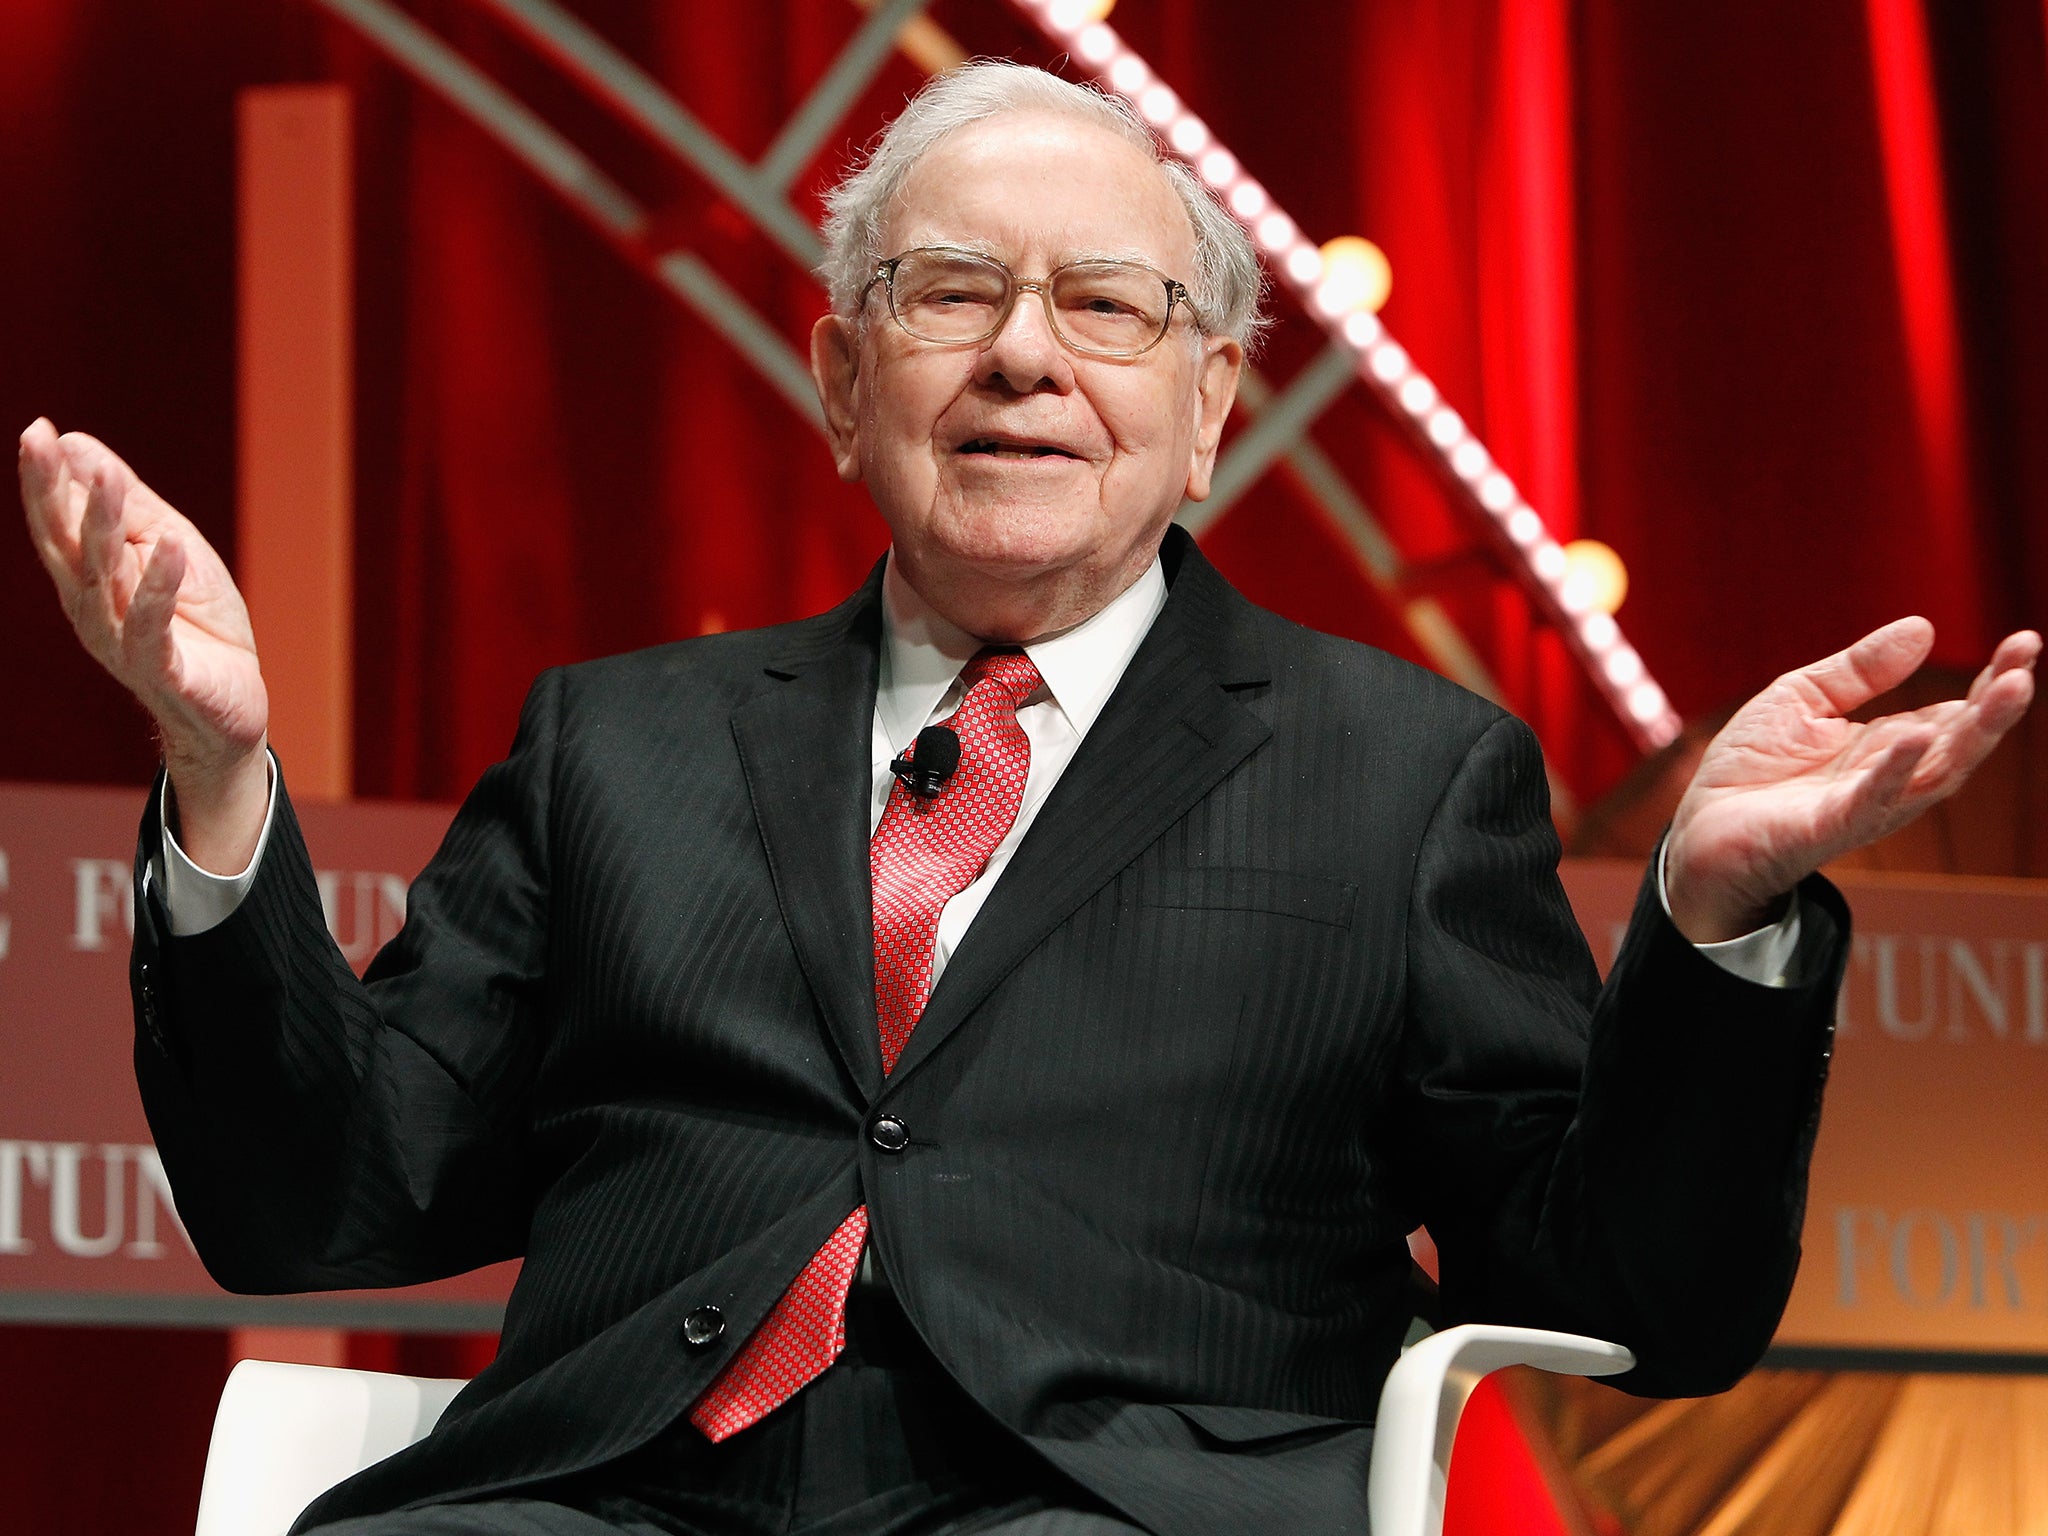 Warren Buffett avoided politics in his annual letter to shareholders